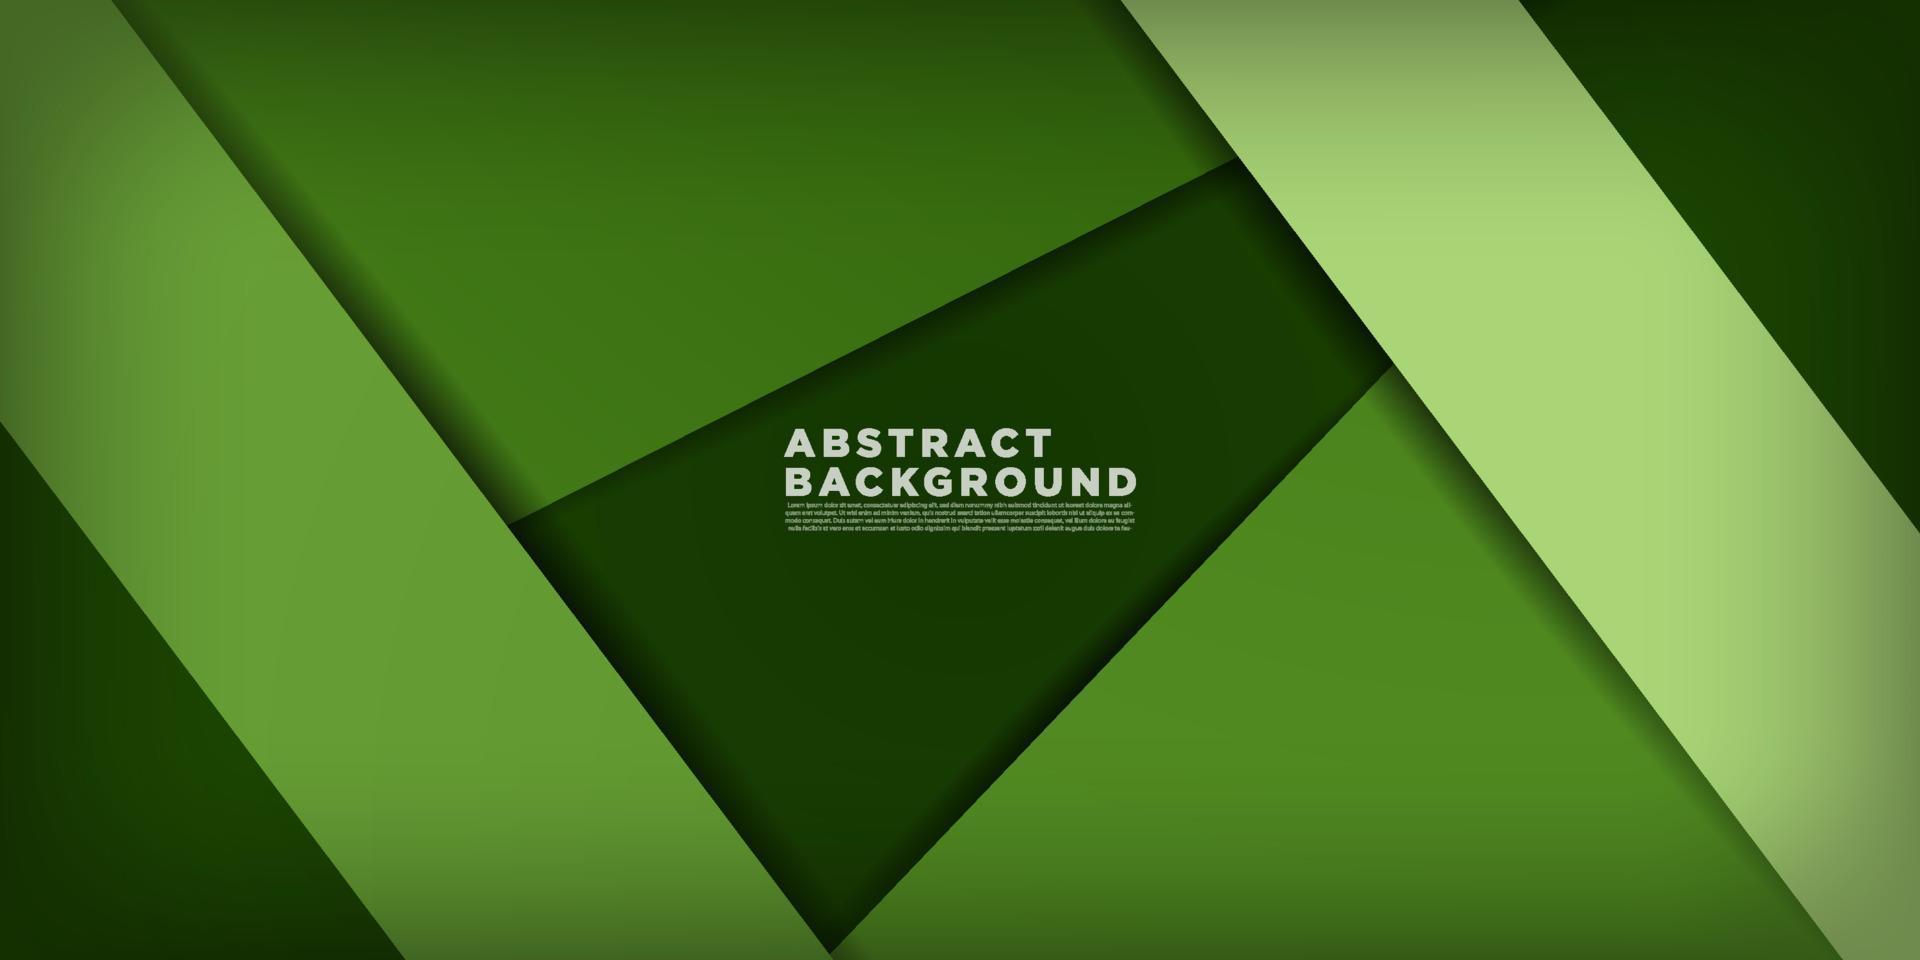 fondo de banner abstracto moderno para diseño de portada de medios sociales, fondo de presentación, banner tecnológico verde oscuro.diseño de corte de papel.vector eps10 vector